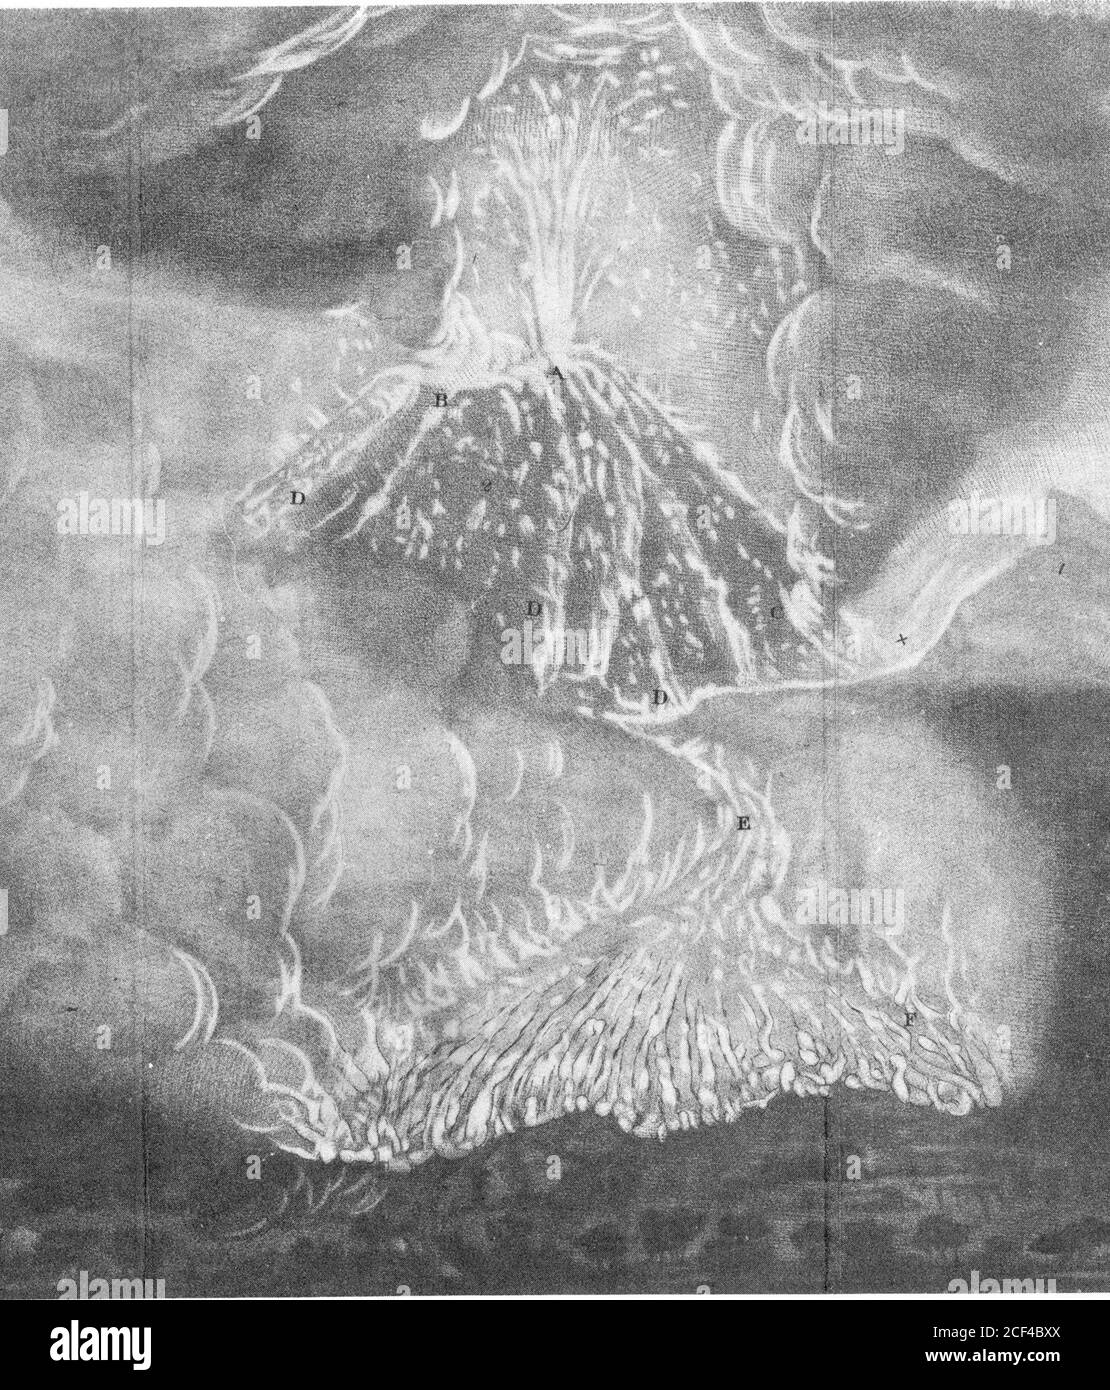 . Un conto dell'eruzione del Vesuvio, nel 1767: In una lettera al Conte di Morton, Presidente della Società reale, dell'onorevole William Hamilton, inviato straordinario di sua Maestà a Napoli. C^z^^^Z^. 6. t^^/i^!i^??i- *z^9zl cy&u^uruJ ^/^ /J^h, rh/m- fJOoiKX&gt;. ISlMi&lt;M.]iiiMi-J4- -i Foto Stock